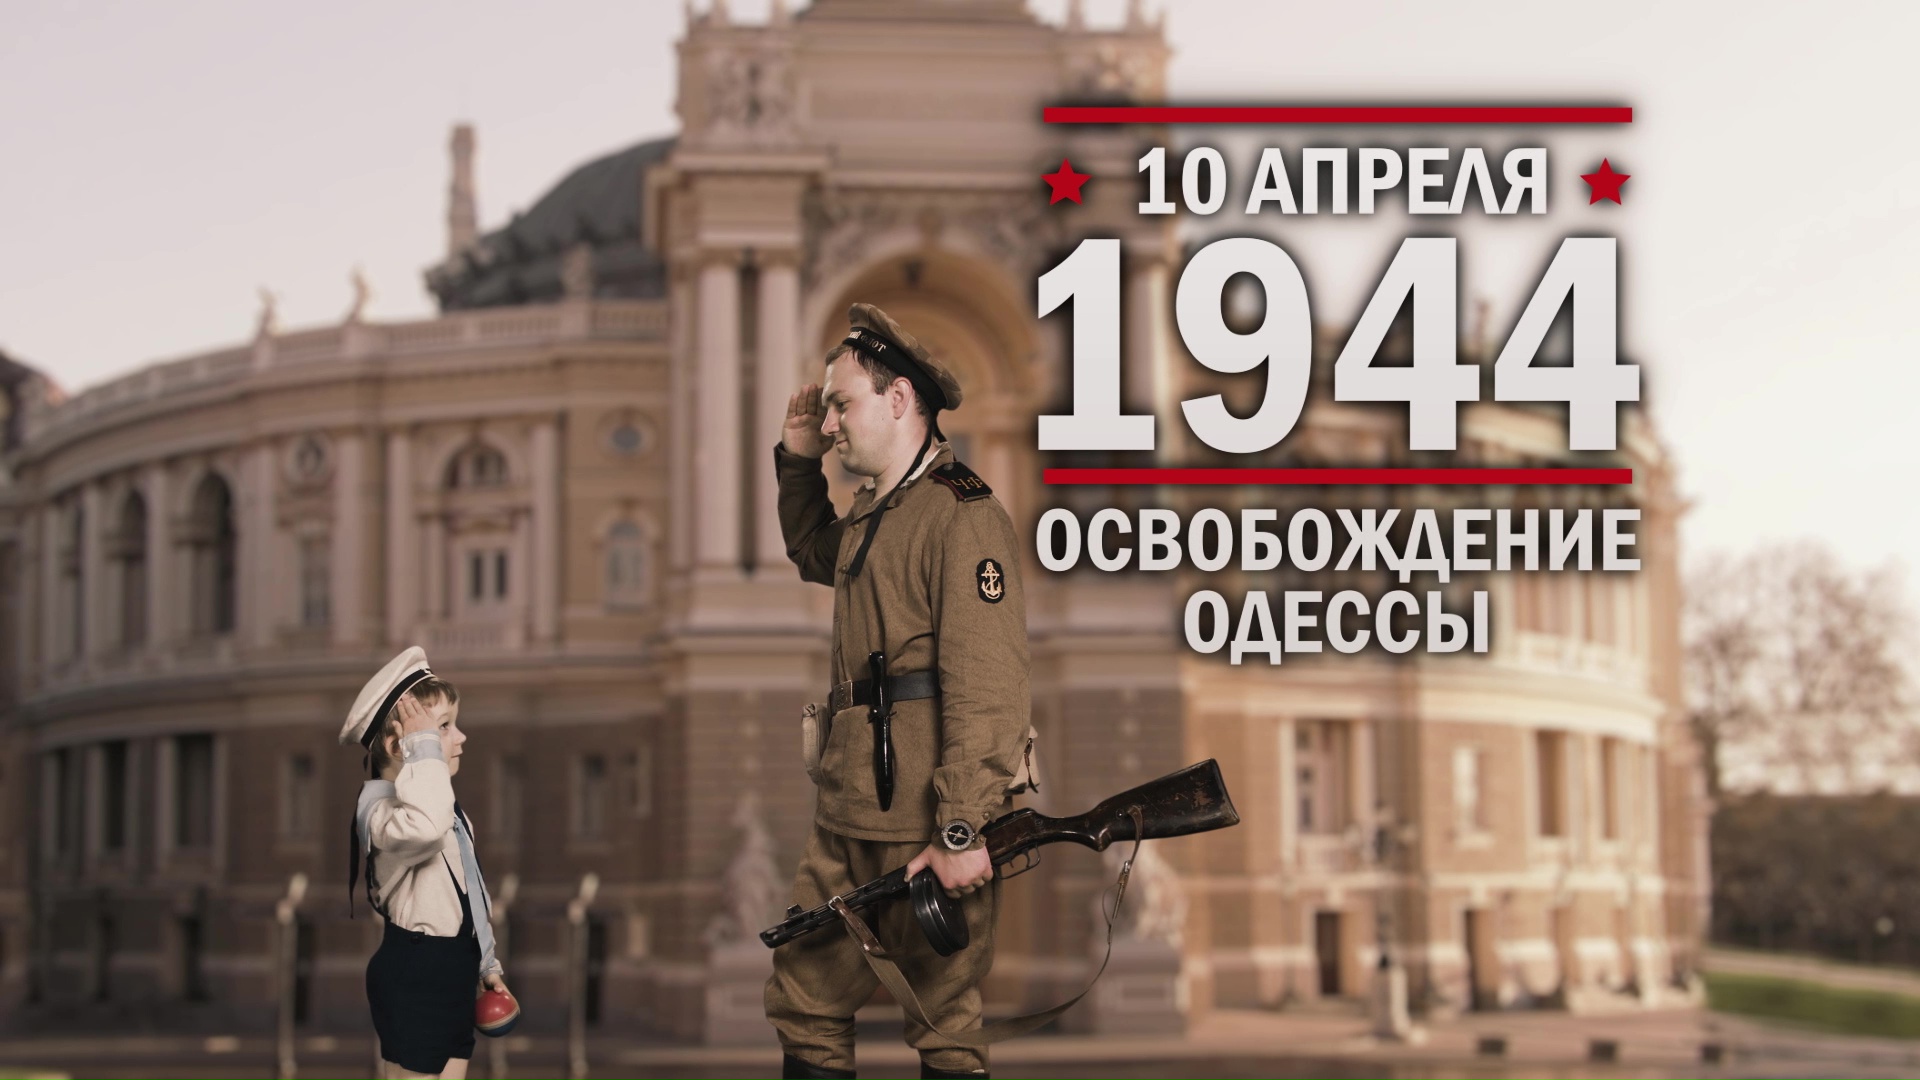 10 апреля 1944 год. Освобождение Одессы